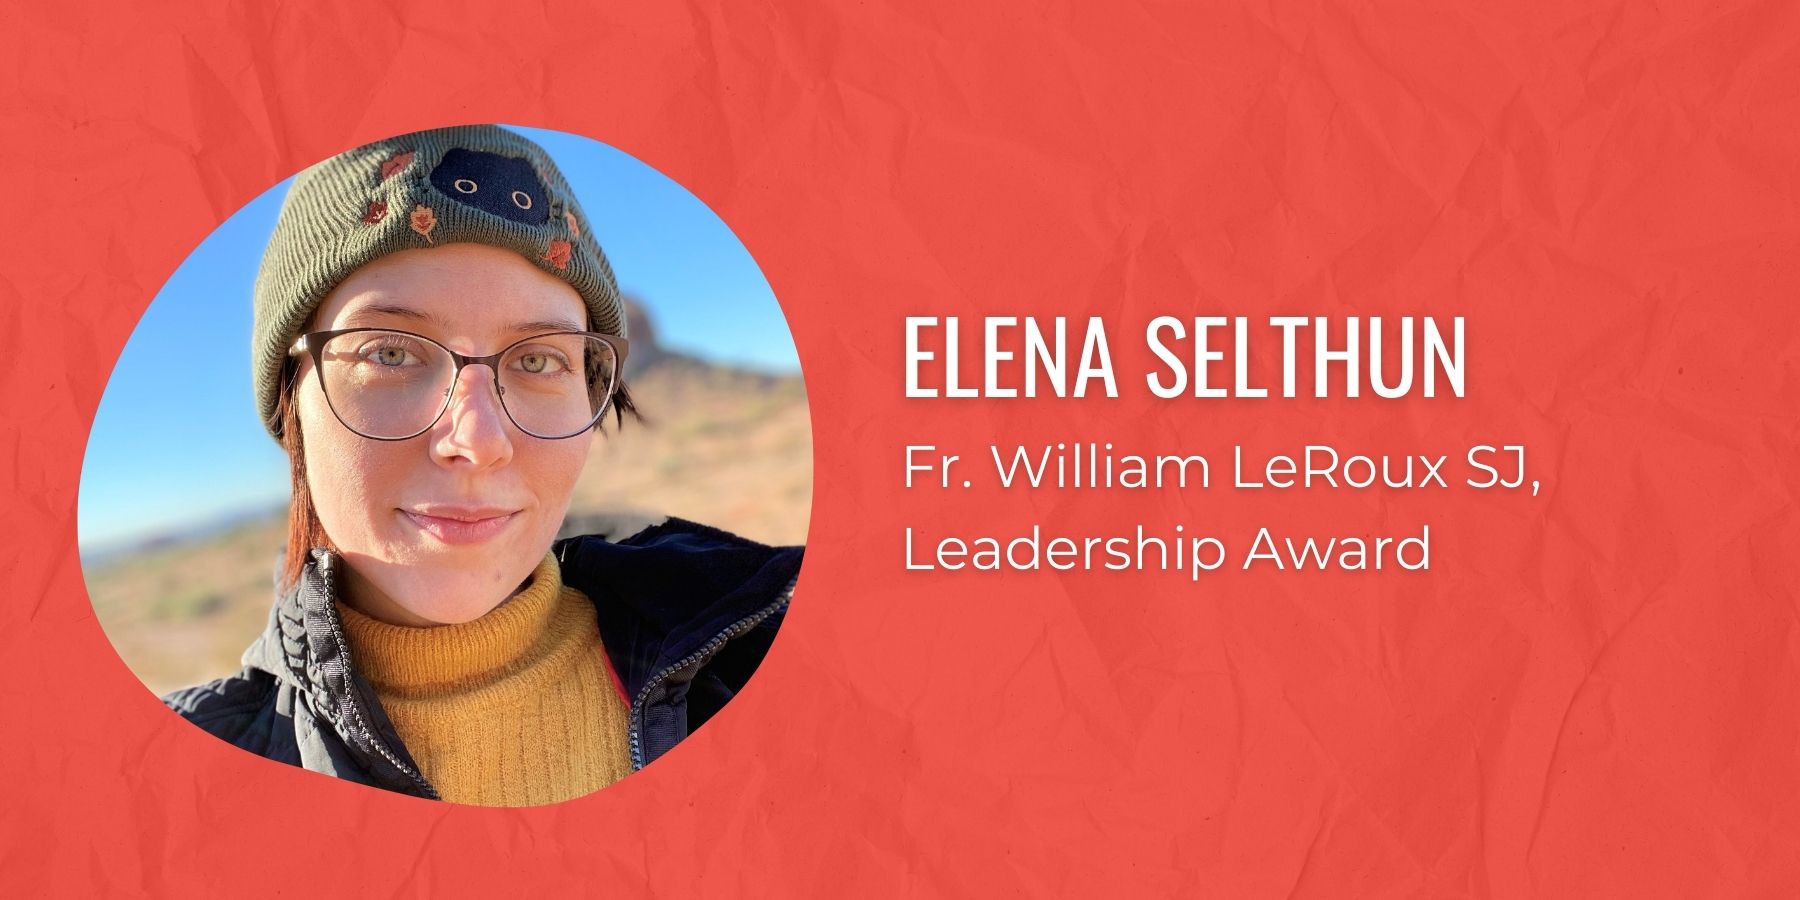 Photo of Elena Selthun and text: Father William Le Roux SJ Leadership Award